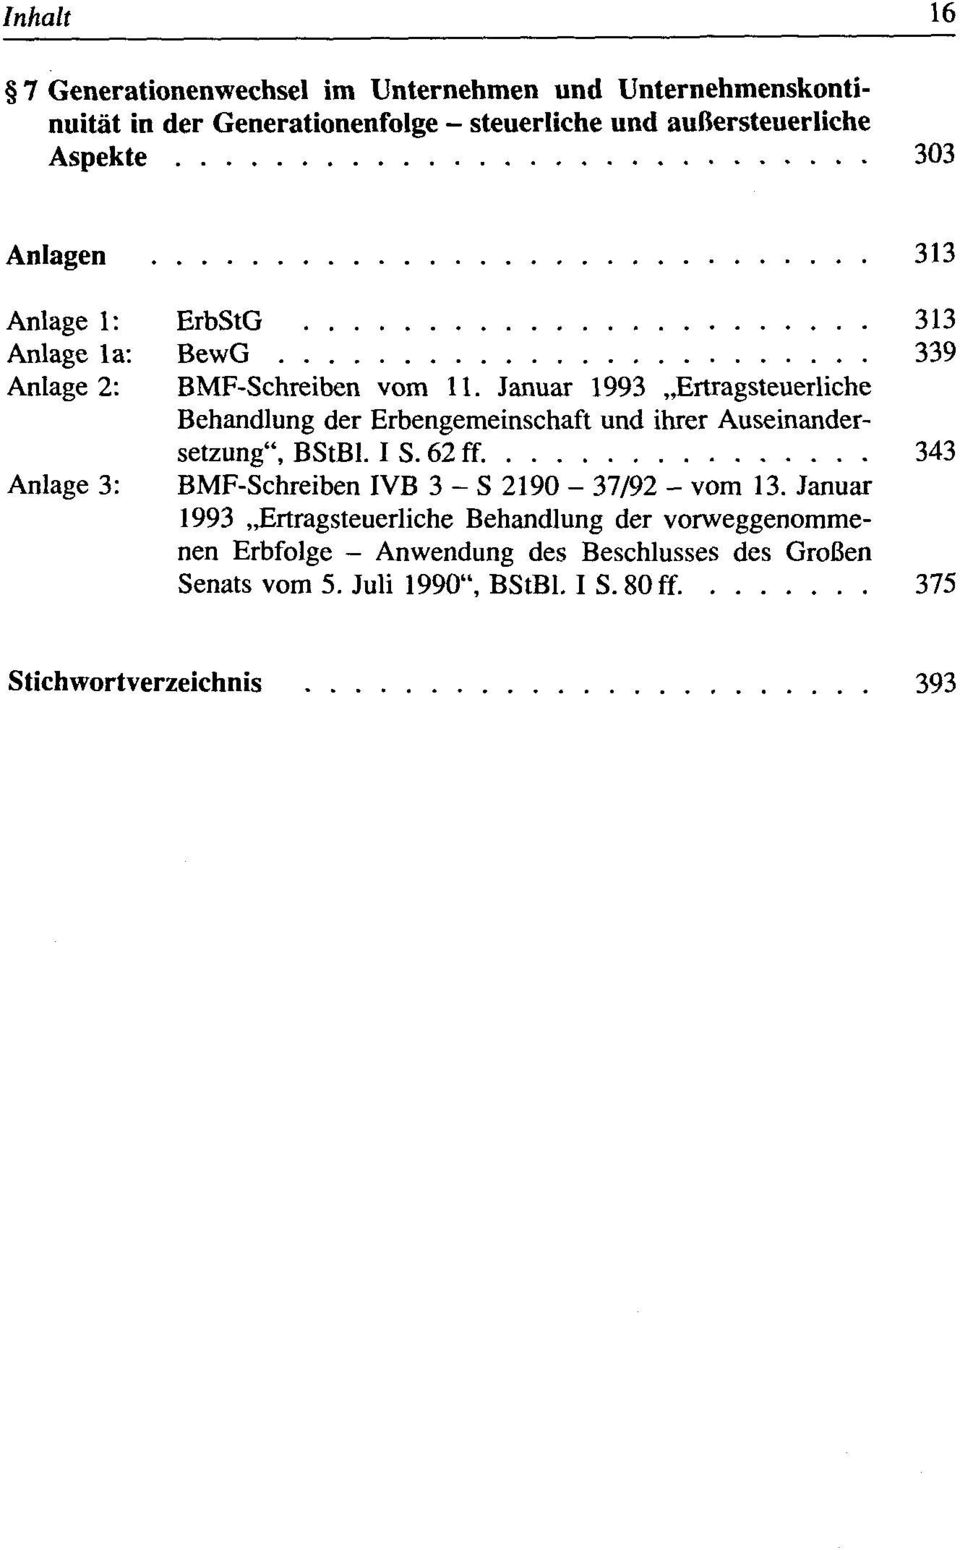 Januar 1993 Ertragsteuerliche Behandlung der Erbengemeinschaft und ihrer Auseinandersetzung", BStBl. I S. 62 ff.